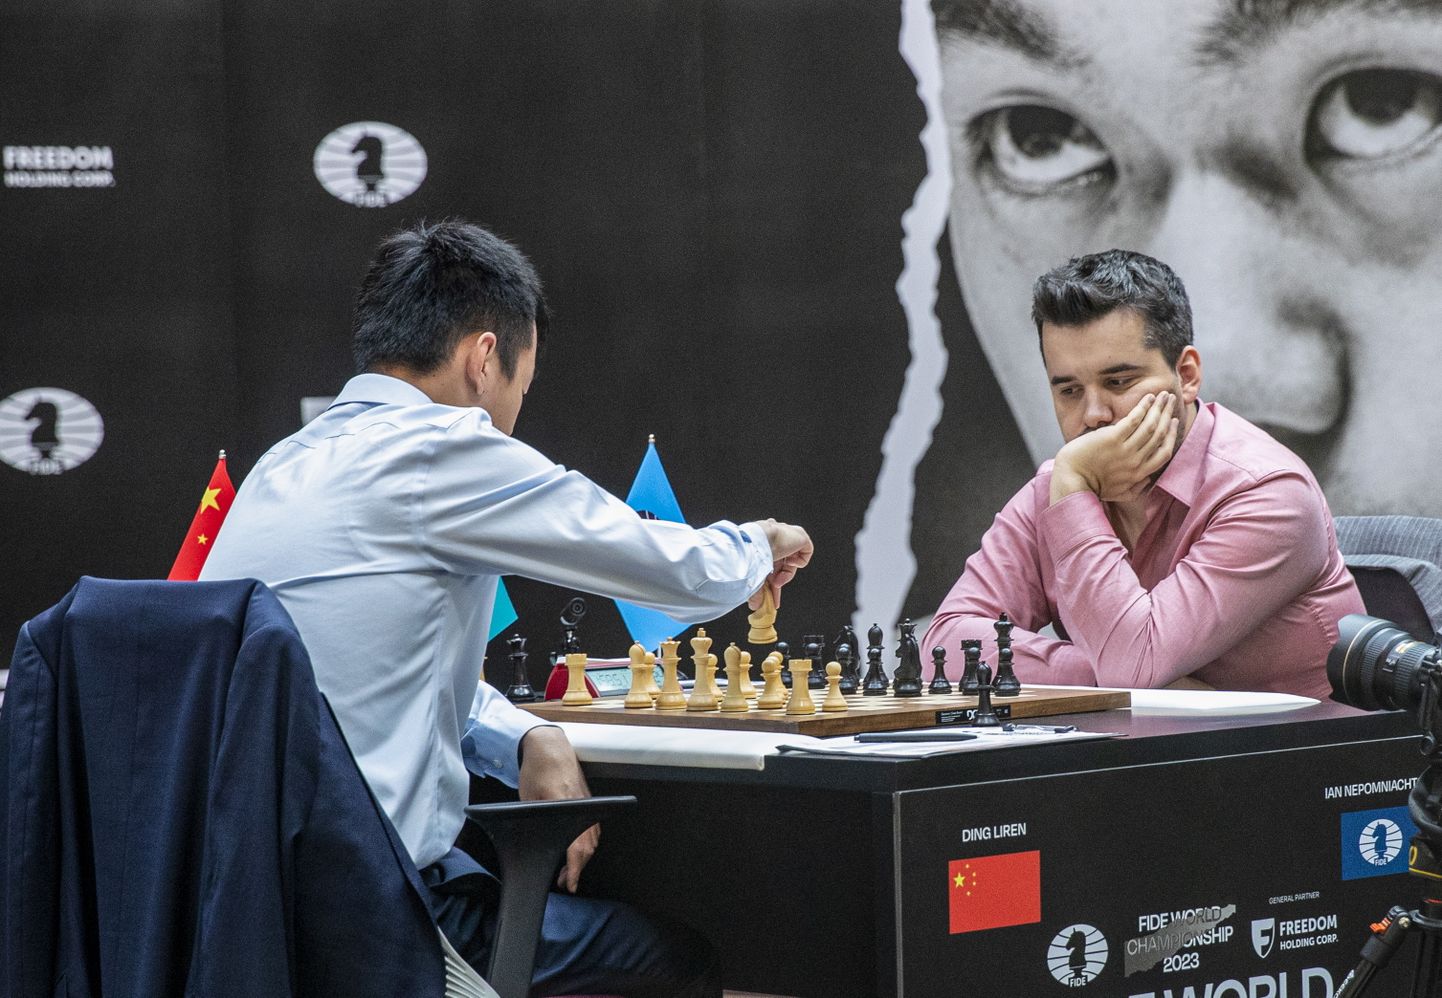 Dins Ližeņs un Jans Ņepomņaščijs cīņā par pasaules šaha čempiona titulu